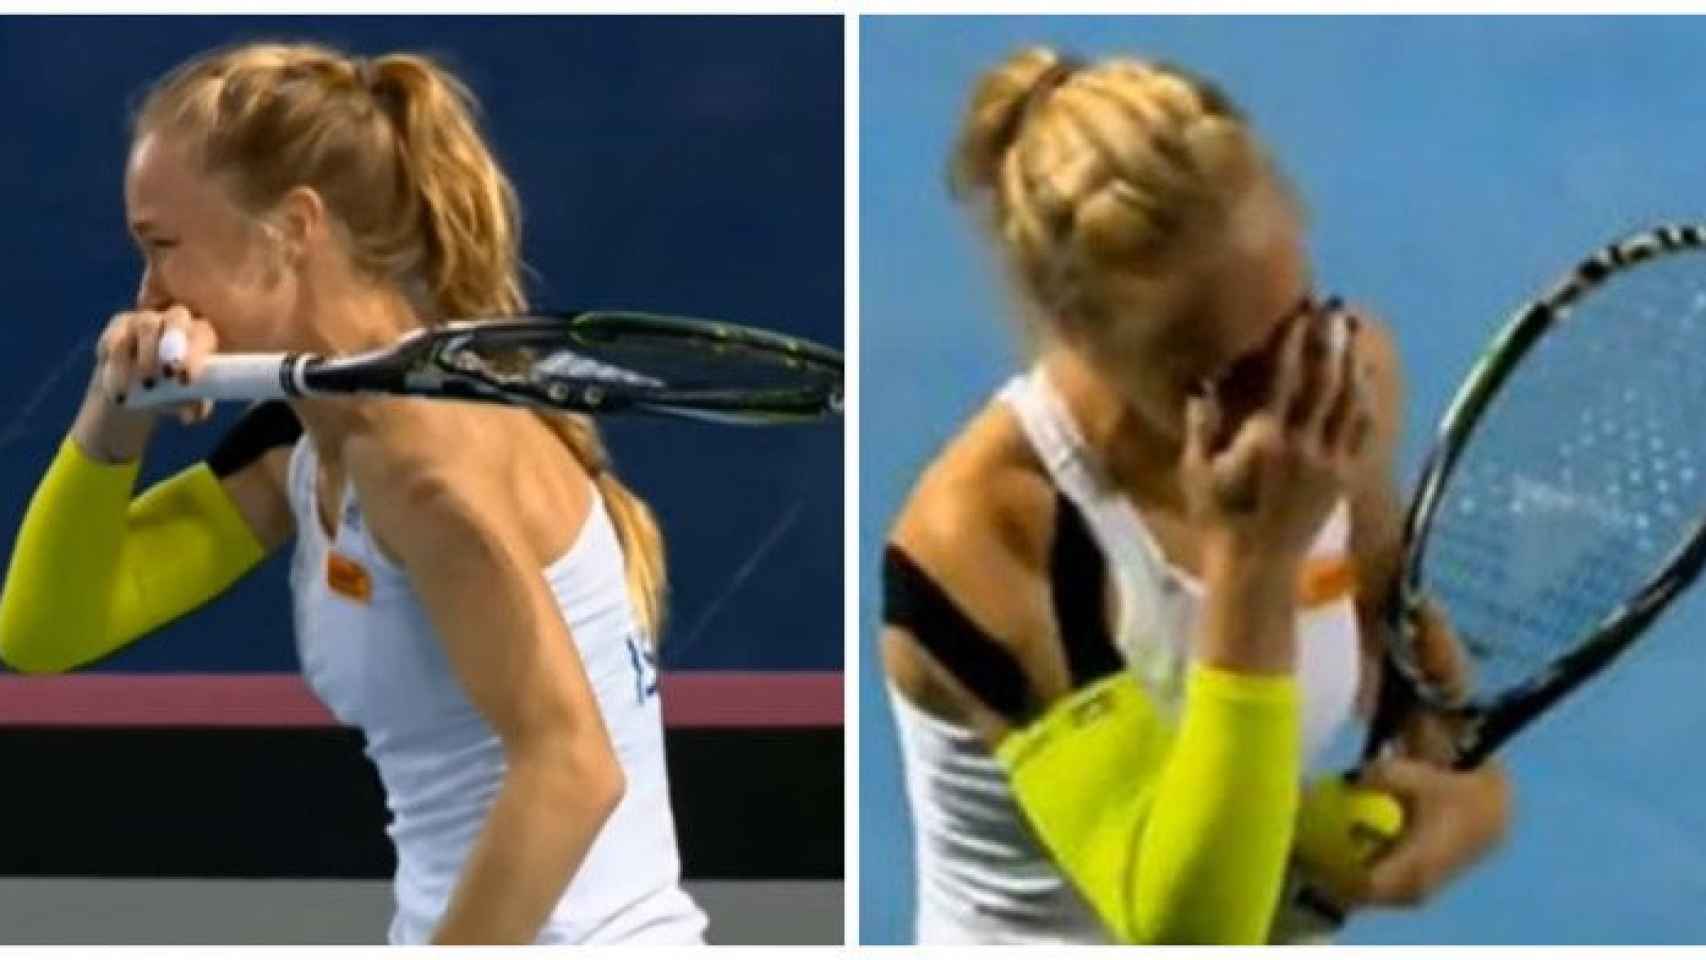 La tenista Julia Glushko tiene un ataque de risa por un error de su rival durante un partido / CG